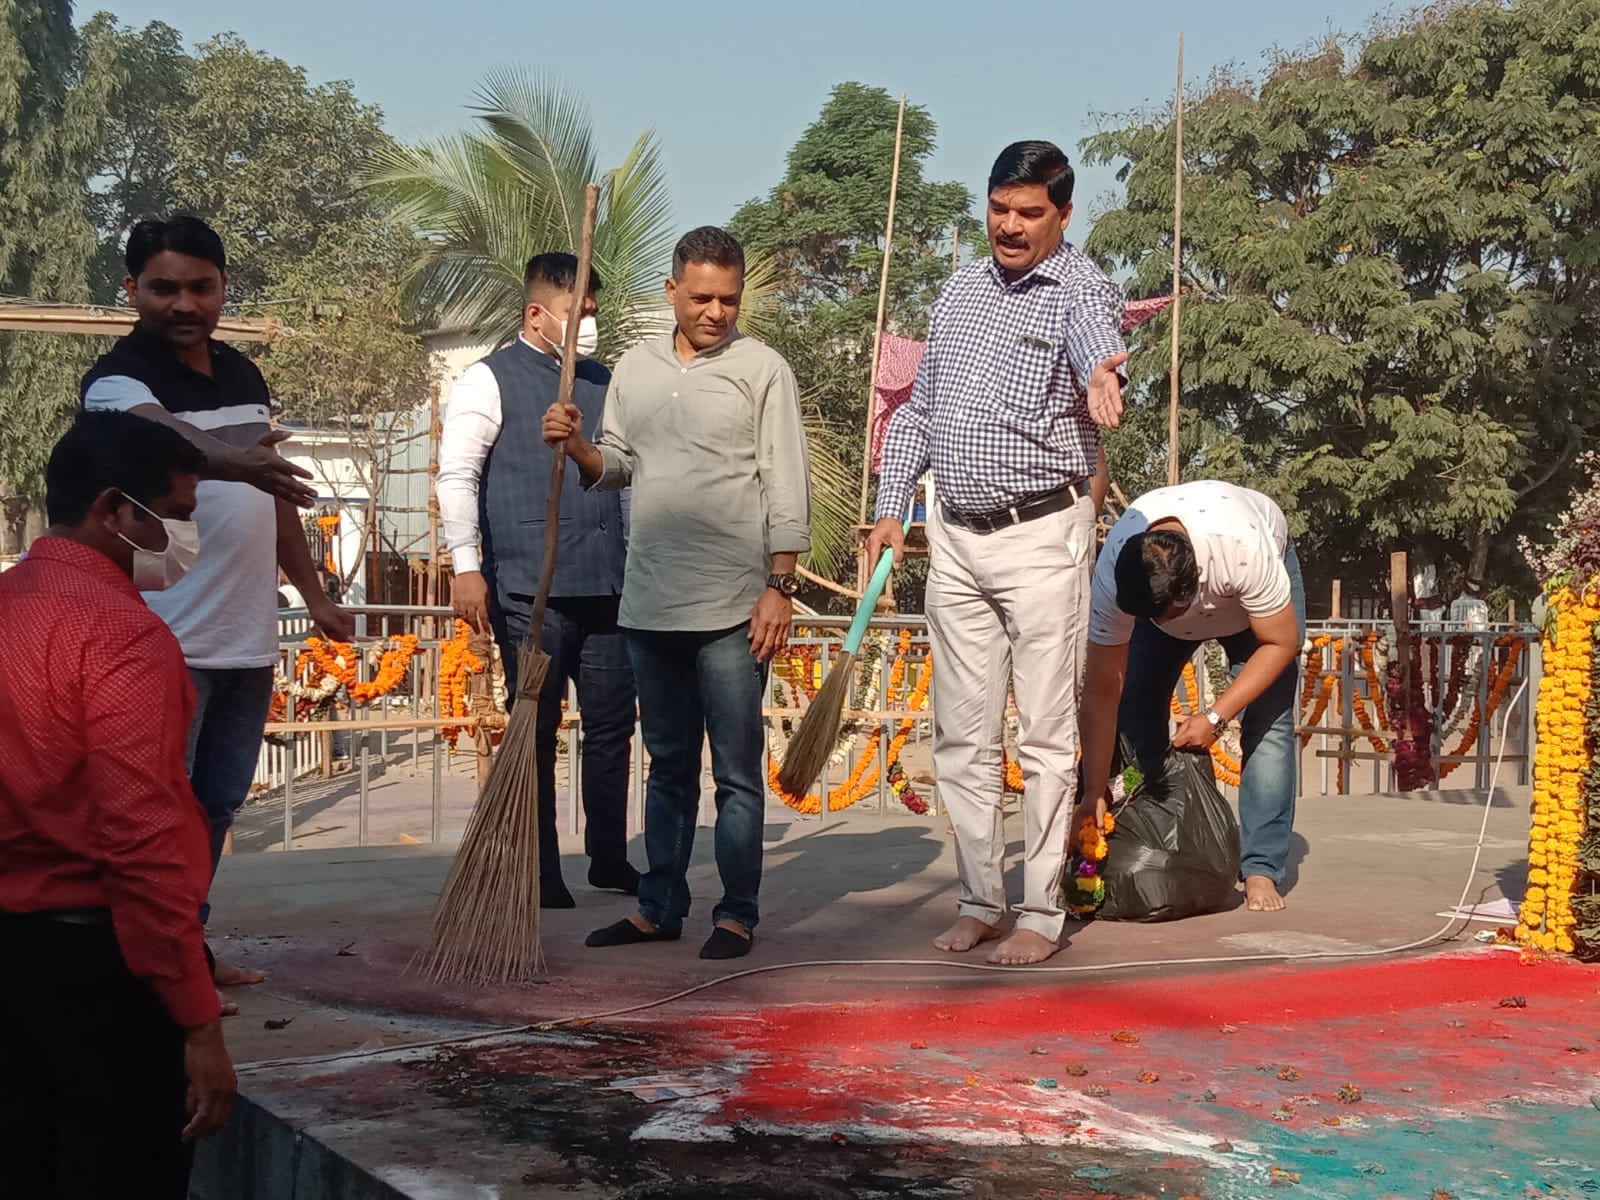 Sanitation in Vijayastambh area | भीमा कोरेगावच्या विजयस्तंभ परिसरात स्वच्छतेचा उपक्रम  |डॉ. सिद्धार्थ धेंडे यांच्यासह सामाजिक संस्थांचा सहभाग